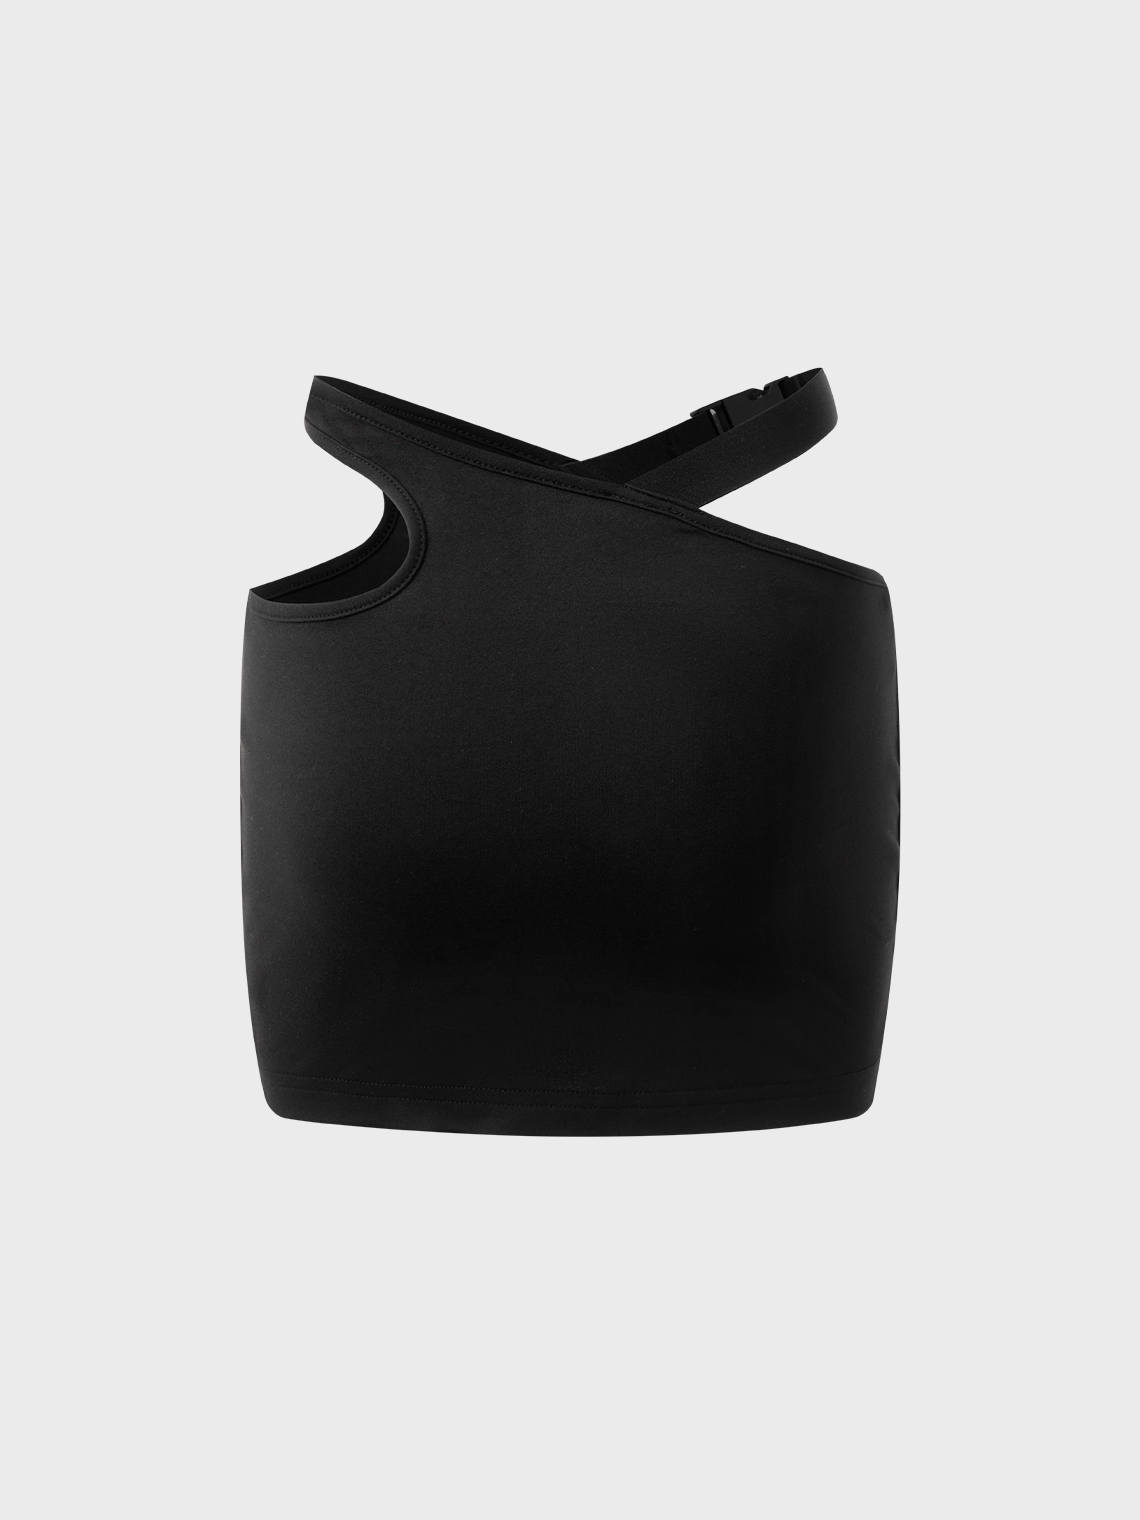 【Final Sale】Street Black 3M Asymmetrical Design Cyberpunk Bottom Skirt